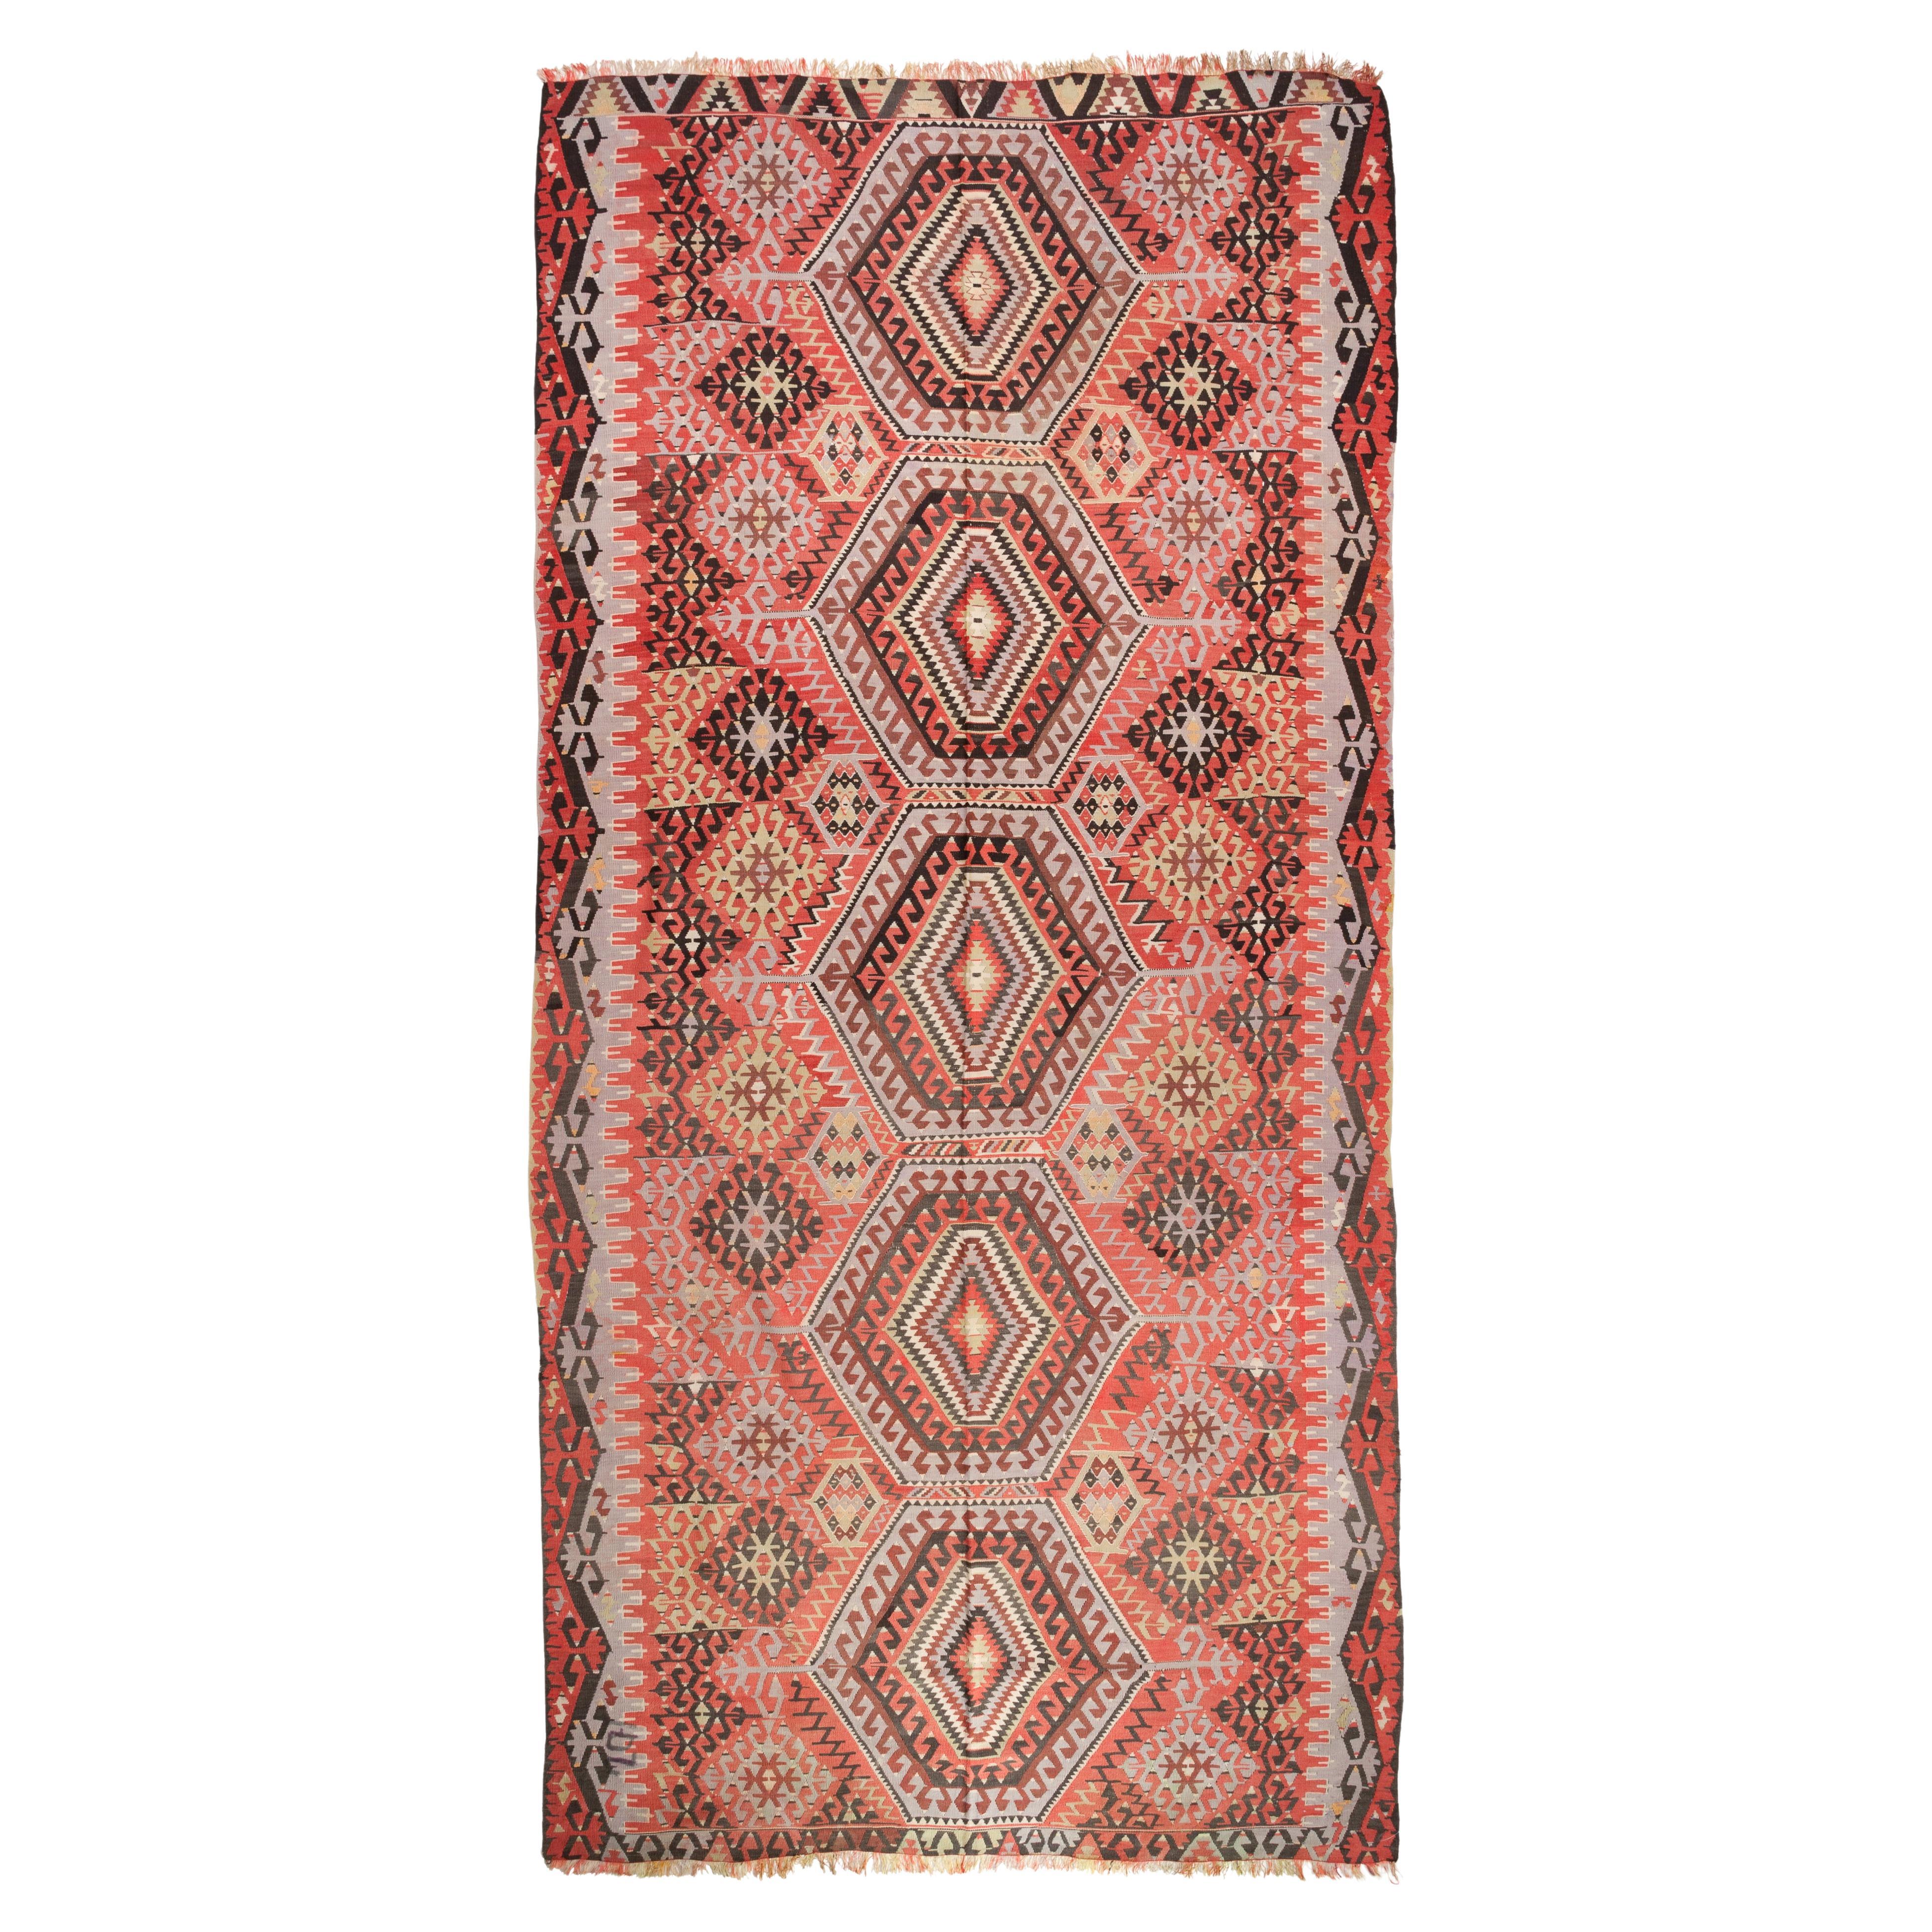 Old Vintage Esme Kilim Western Anatolian Turkish Carpet